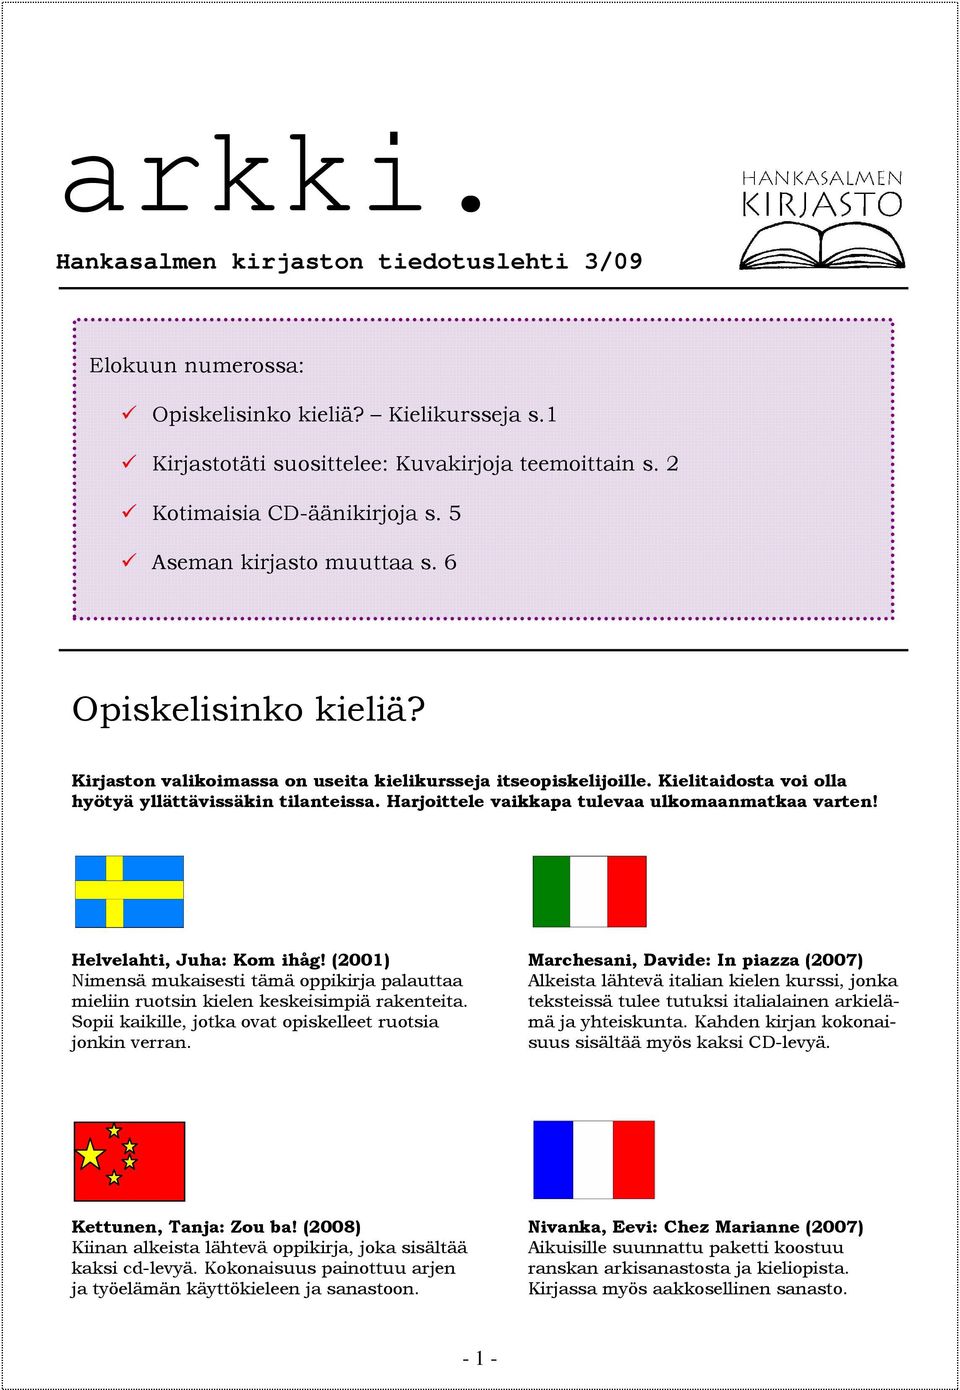 Harjoittele vaikkapa tulevaa ulkomaanmatkaa varten! Helvelahti, Juha: Kom ihåg! (2001) Nimensä mukaisesti tämä oppikirja palauttaa mieliin ruotsin kielen keskeisimpiä rakenteita.